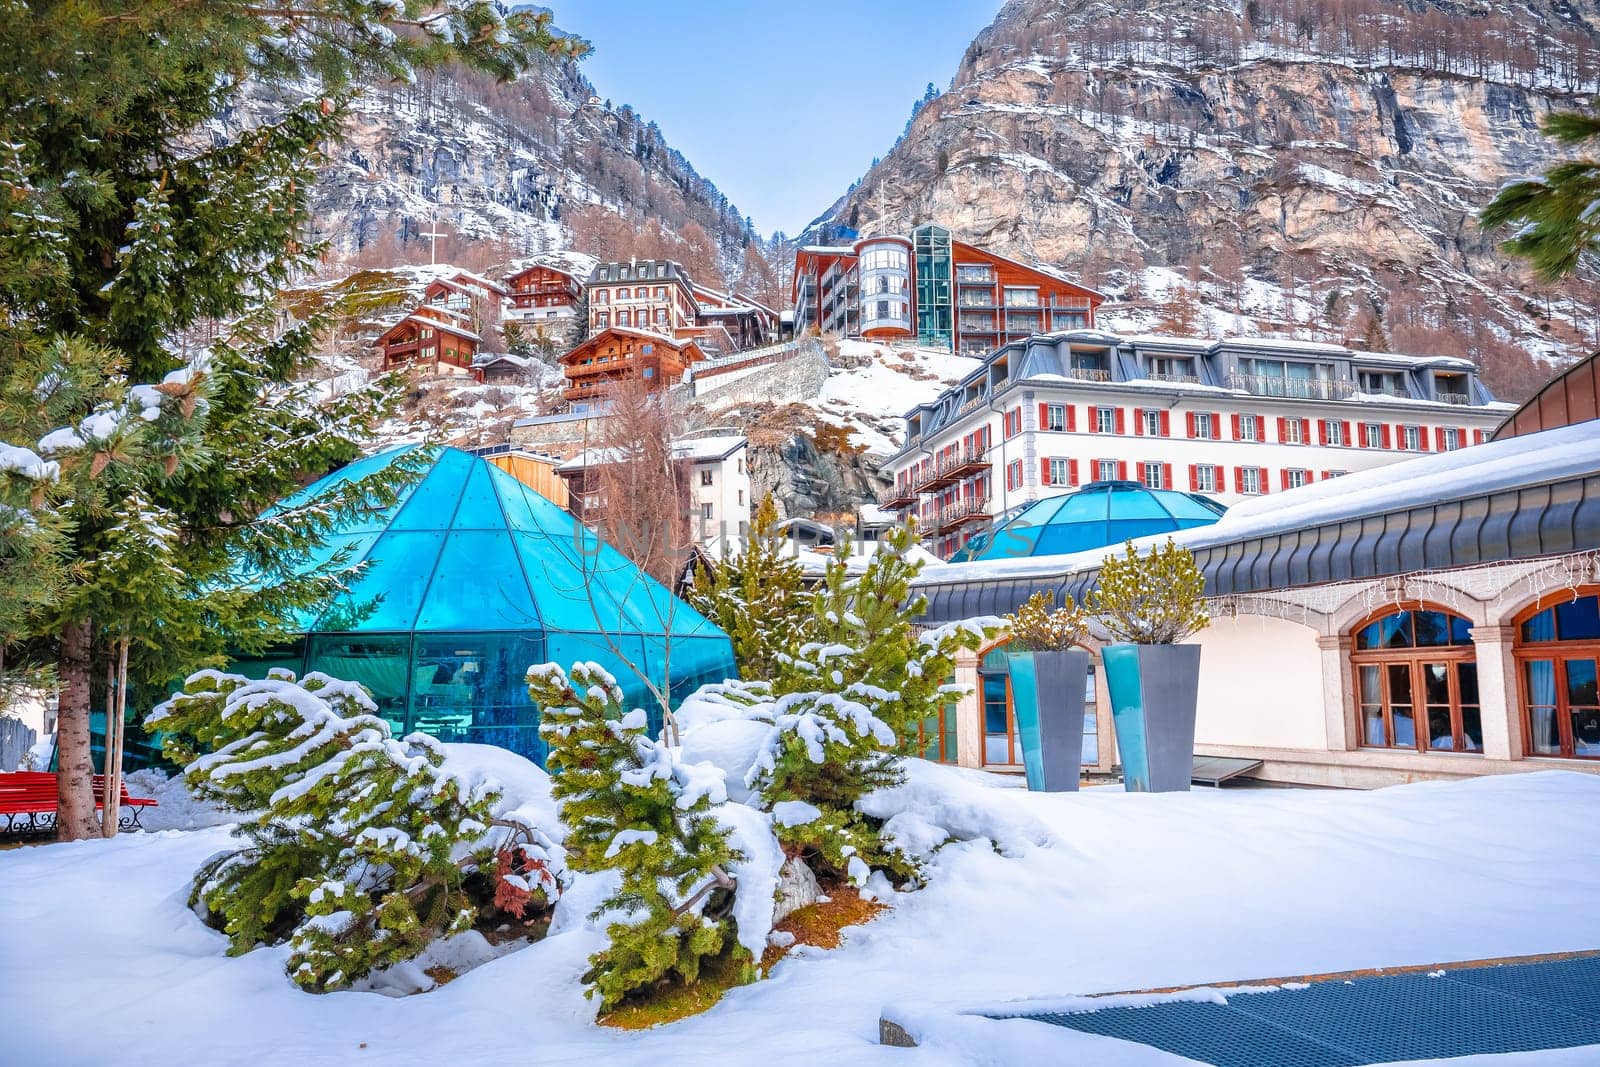 Idyllic village of Zermatt view, luxury winter destination by xbrchx